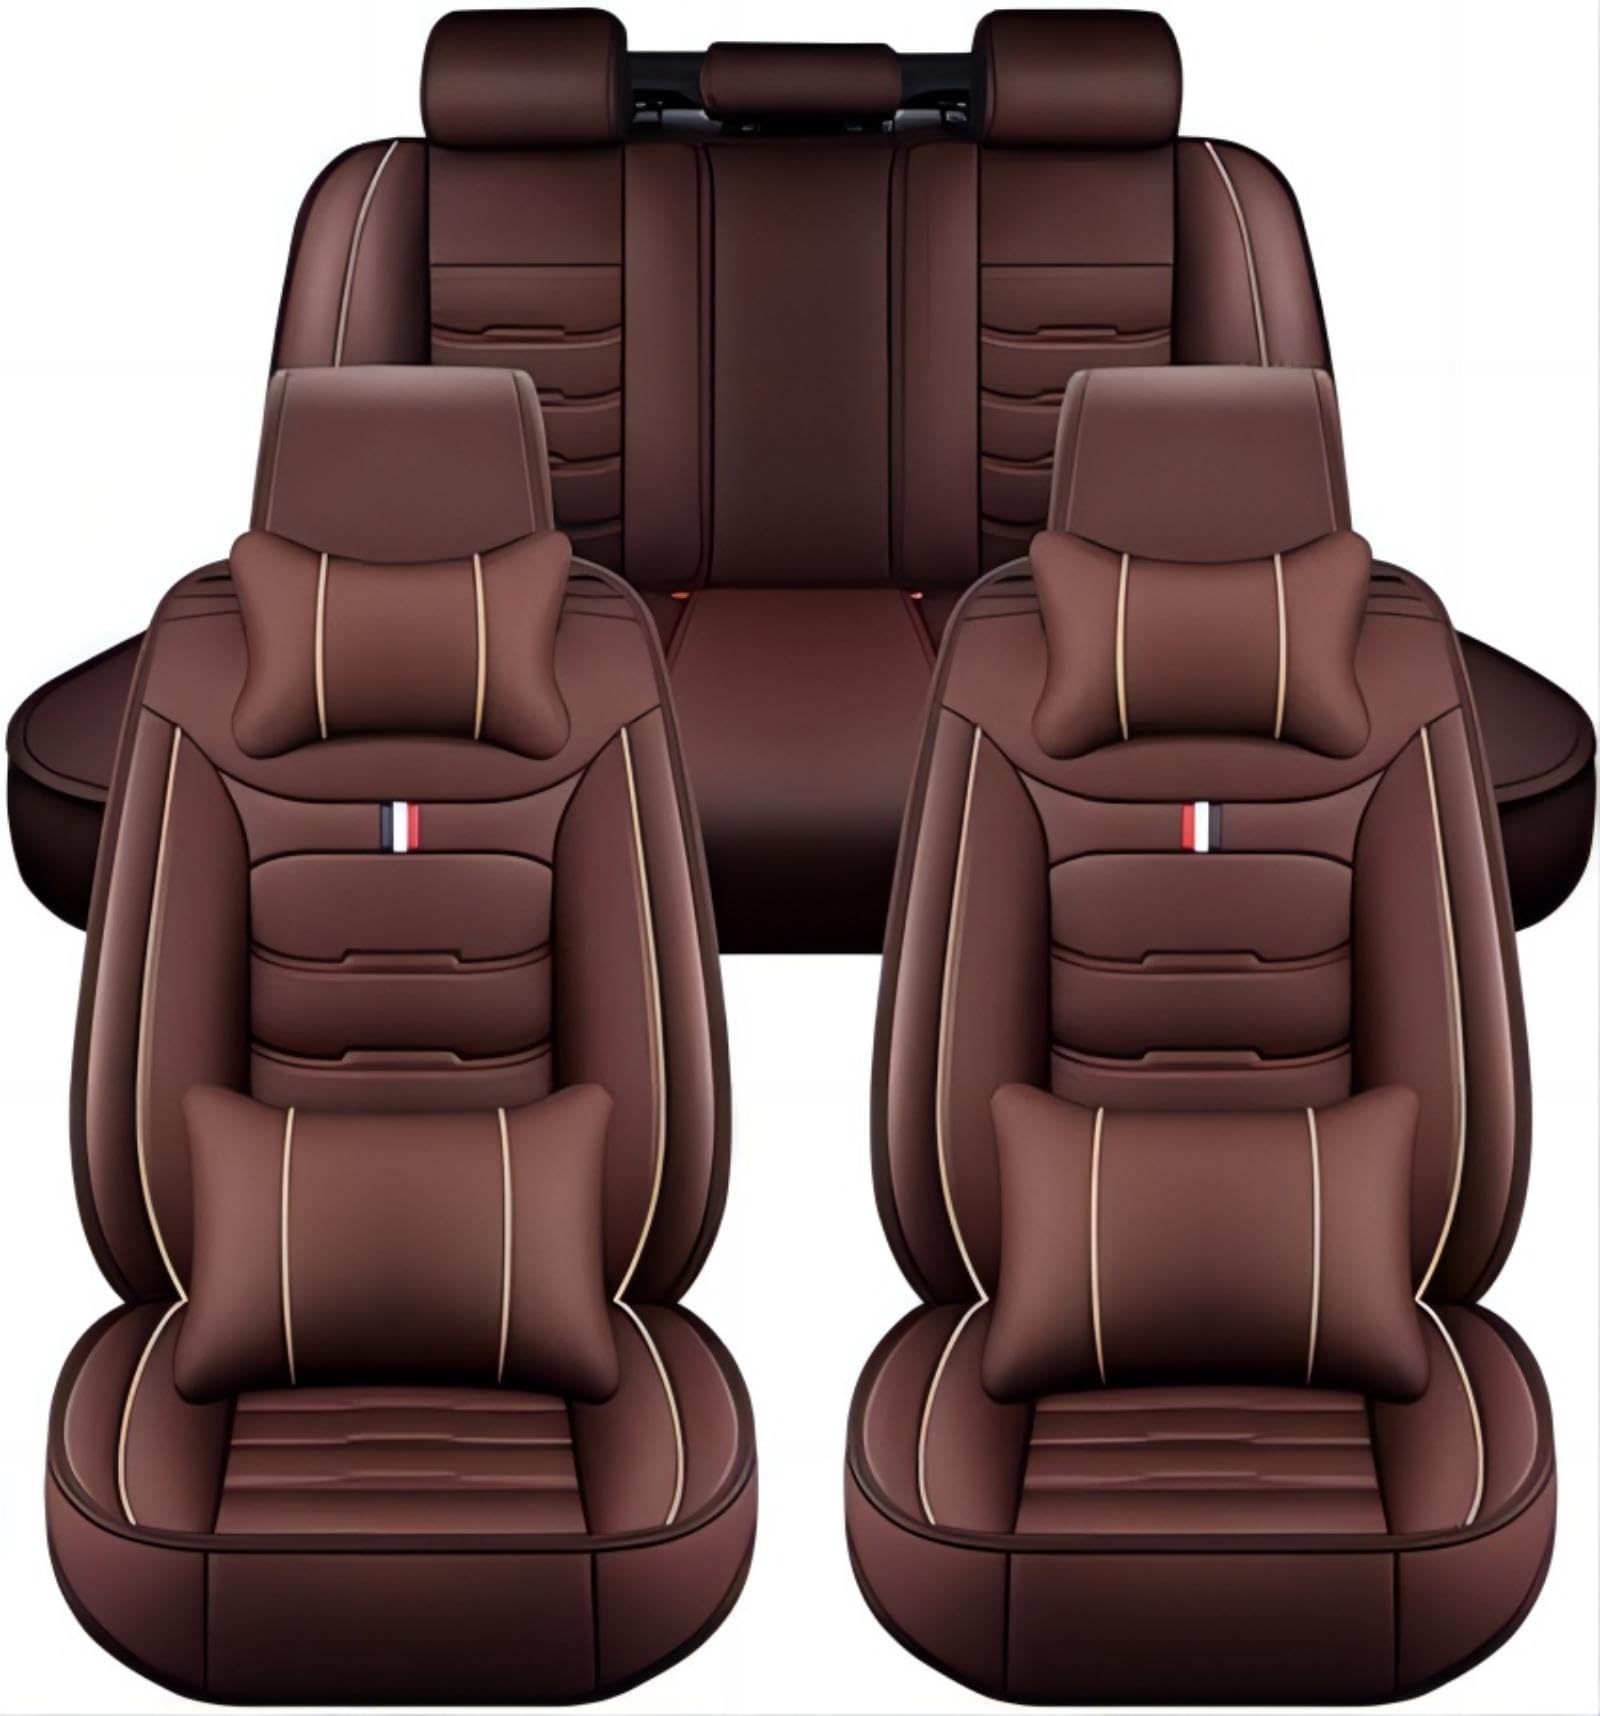 Passion88 Sitzbezüge Auto für Cadillac XT4 2018 2019 2020 2021 2022, Bequem Wasserdicht rutschfest Sitzschoner, Sitzbezug Auto Set, Airbag Kompatibel, Auto Zubehör,D von Passion88